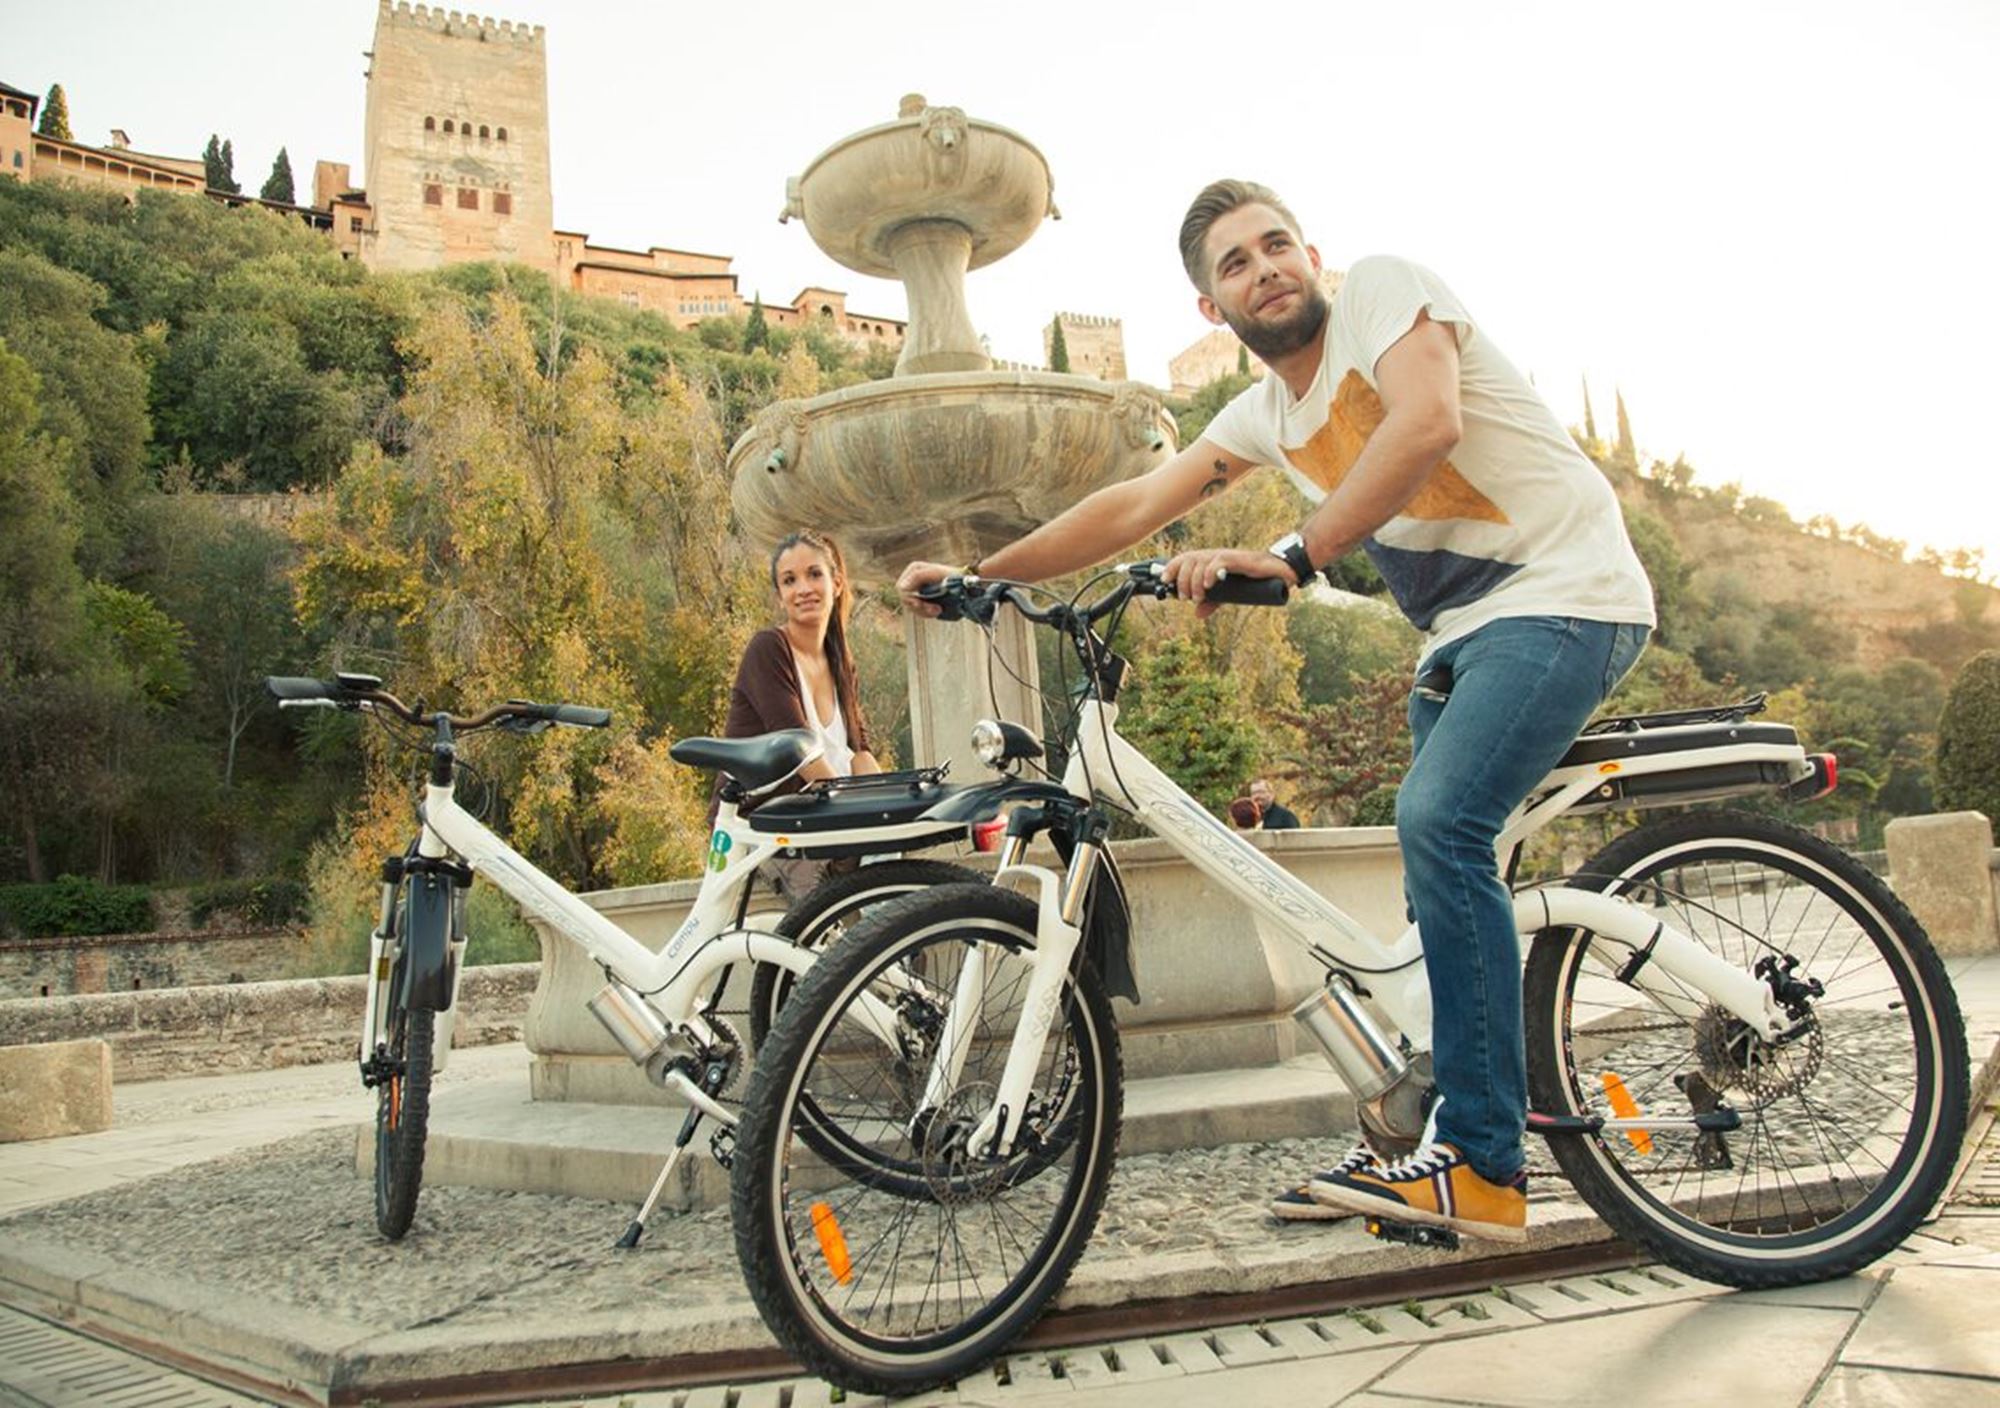 Tours guiados visitas guiadas excursiones cosas que hacer ver en Granada